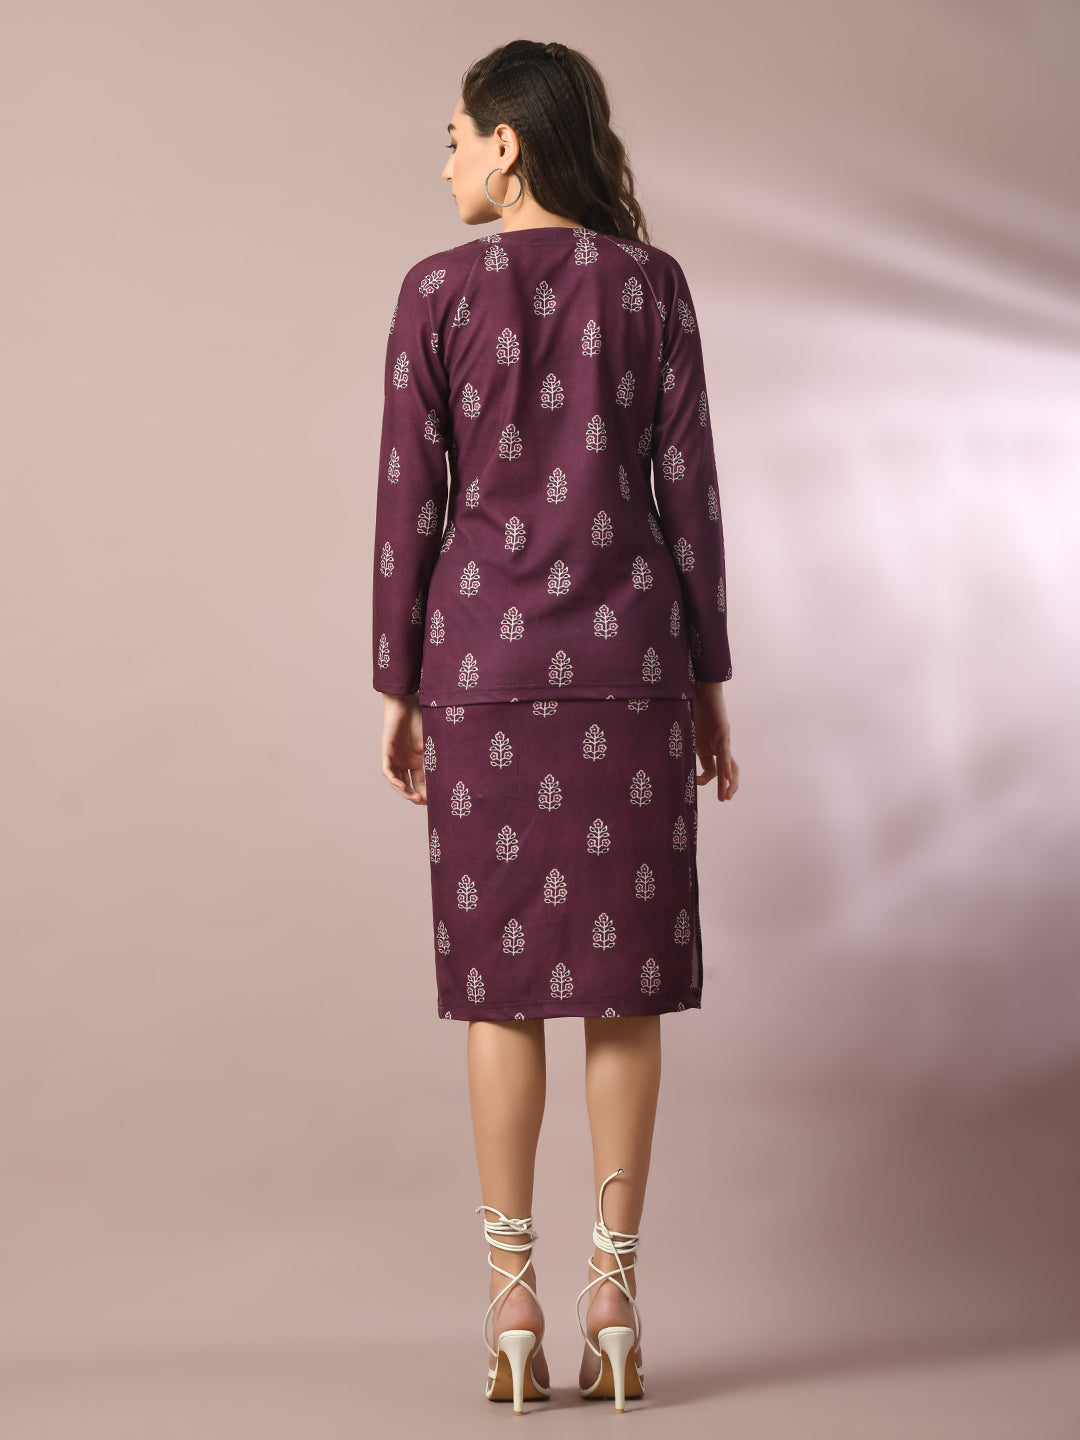 Women's  Violet Printed Knee Length Party Embellished Skirts   - Myshka